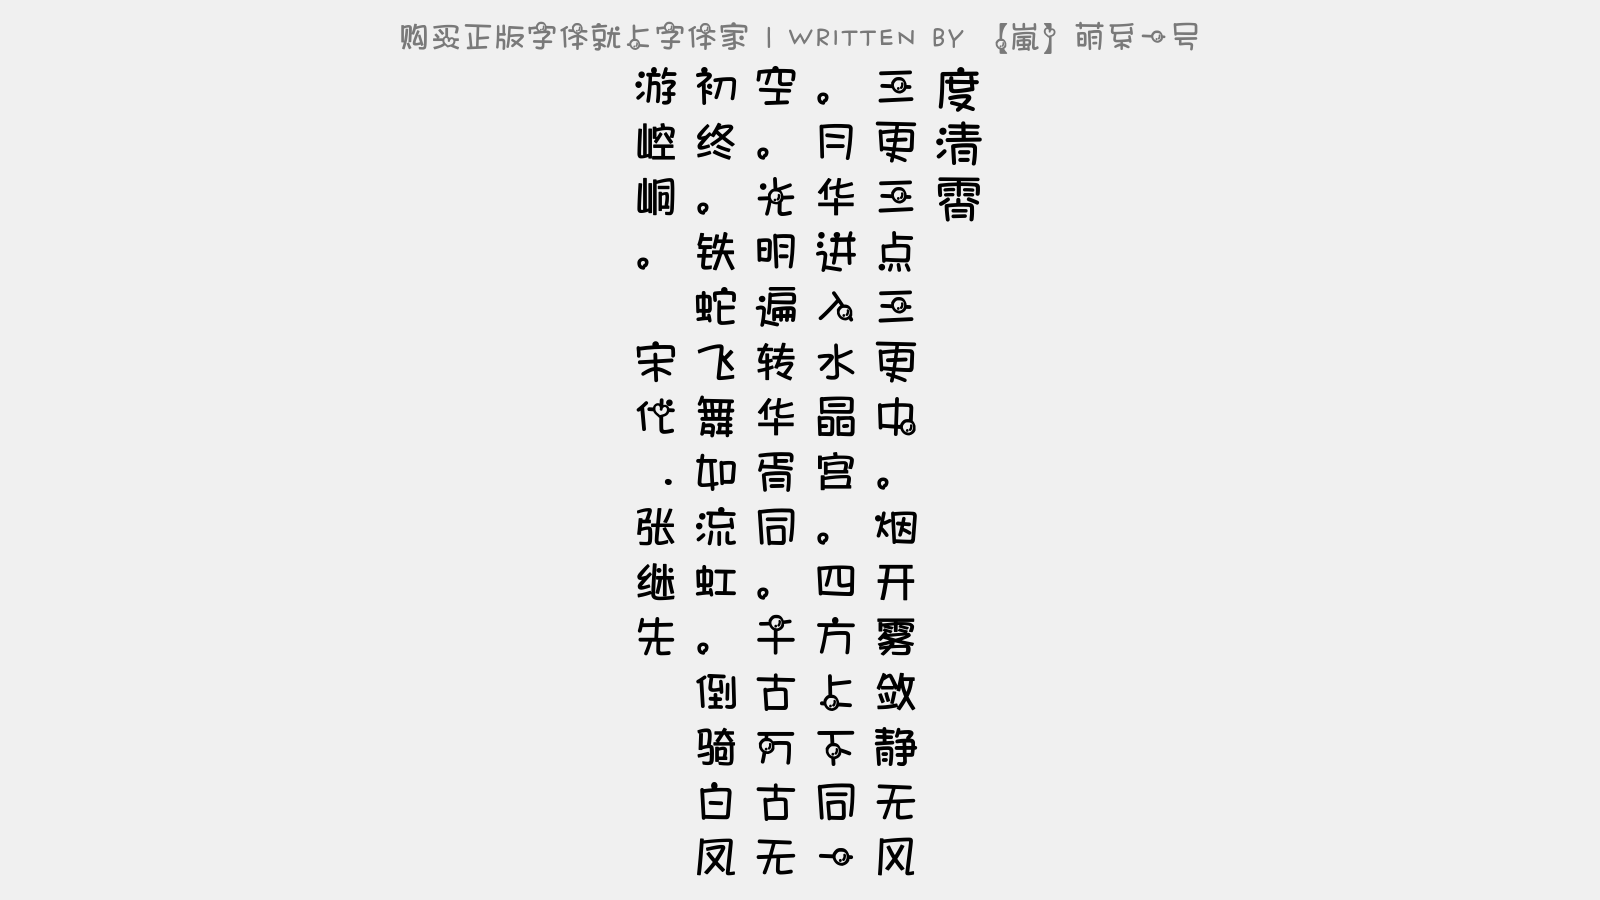 嵐 萌系一号免费字体下载 中文字体免费下载尽在字体家